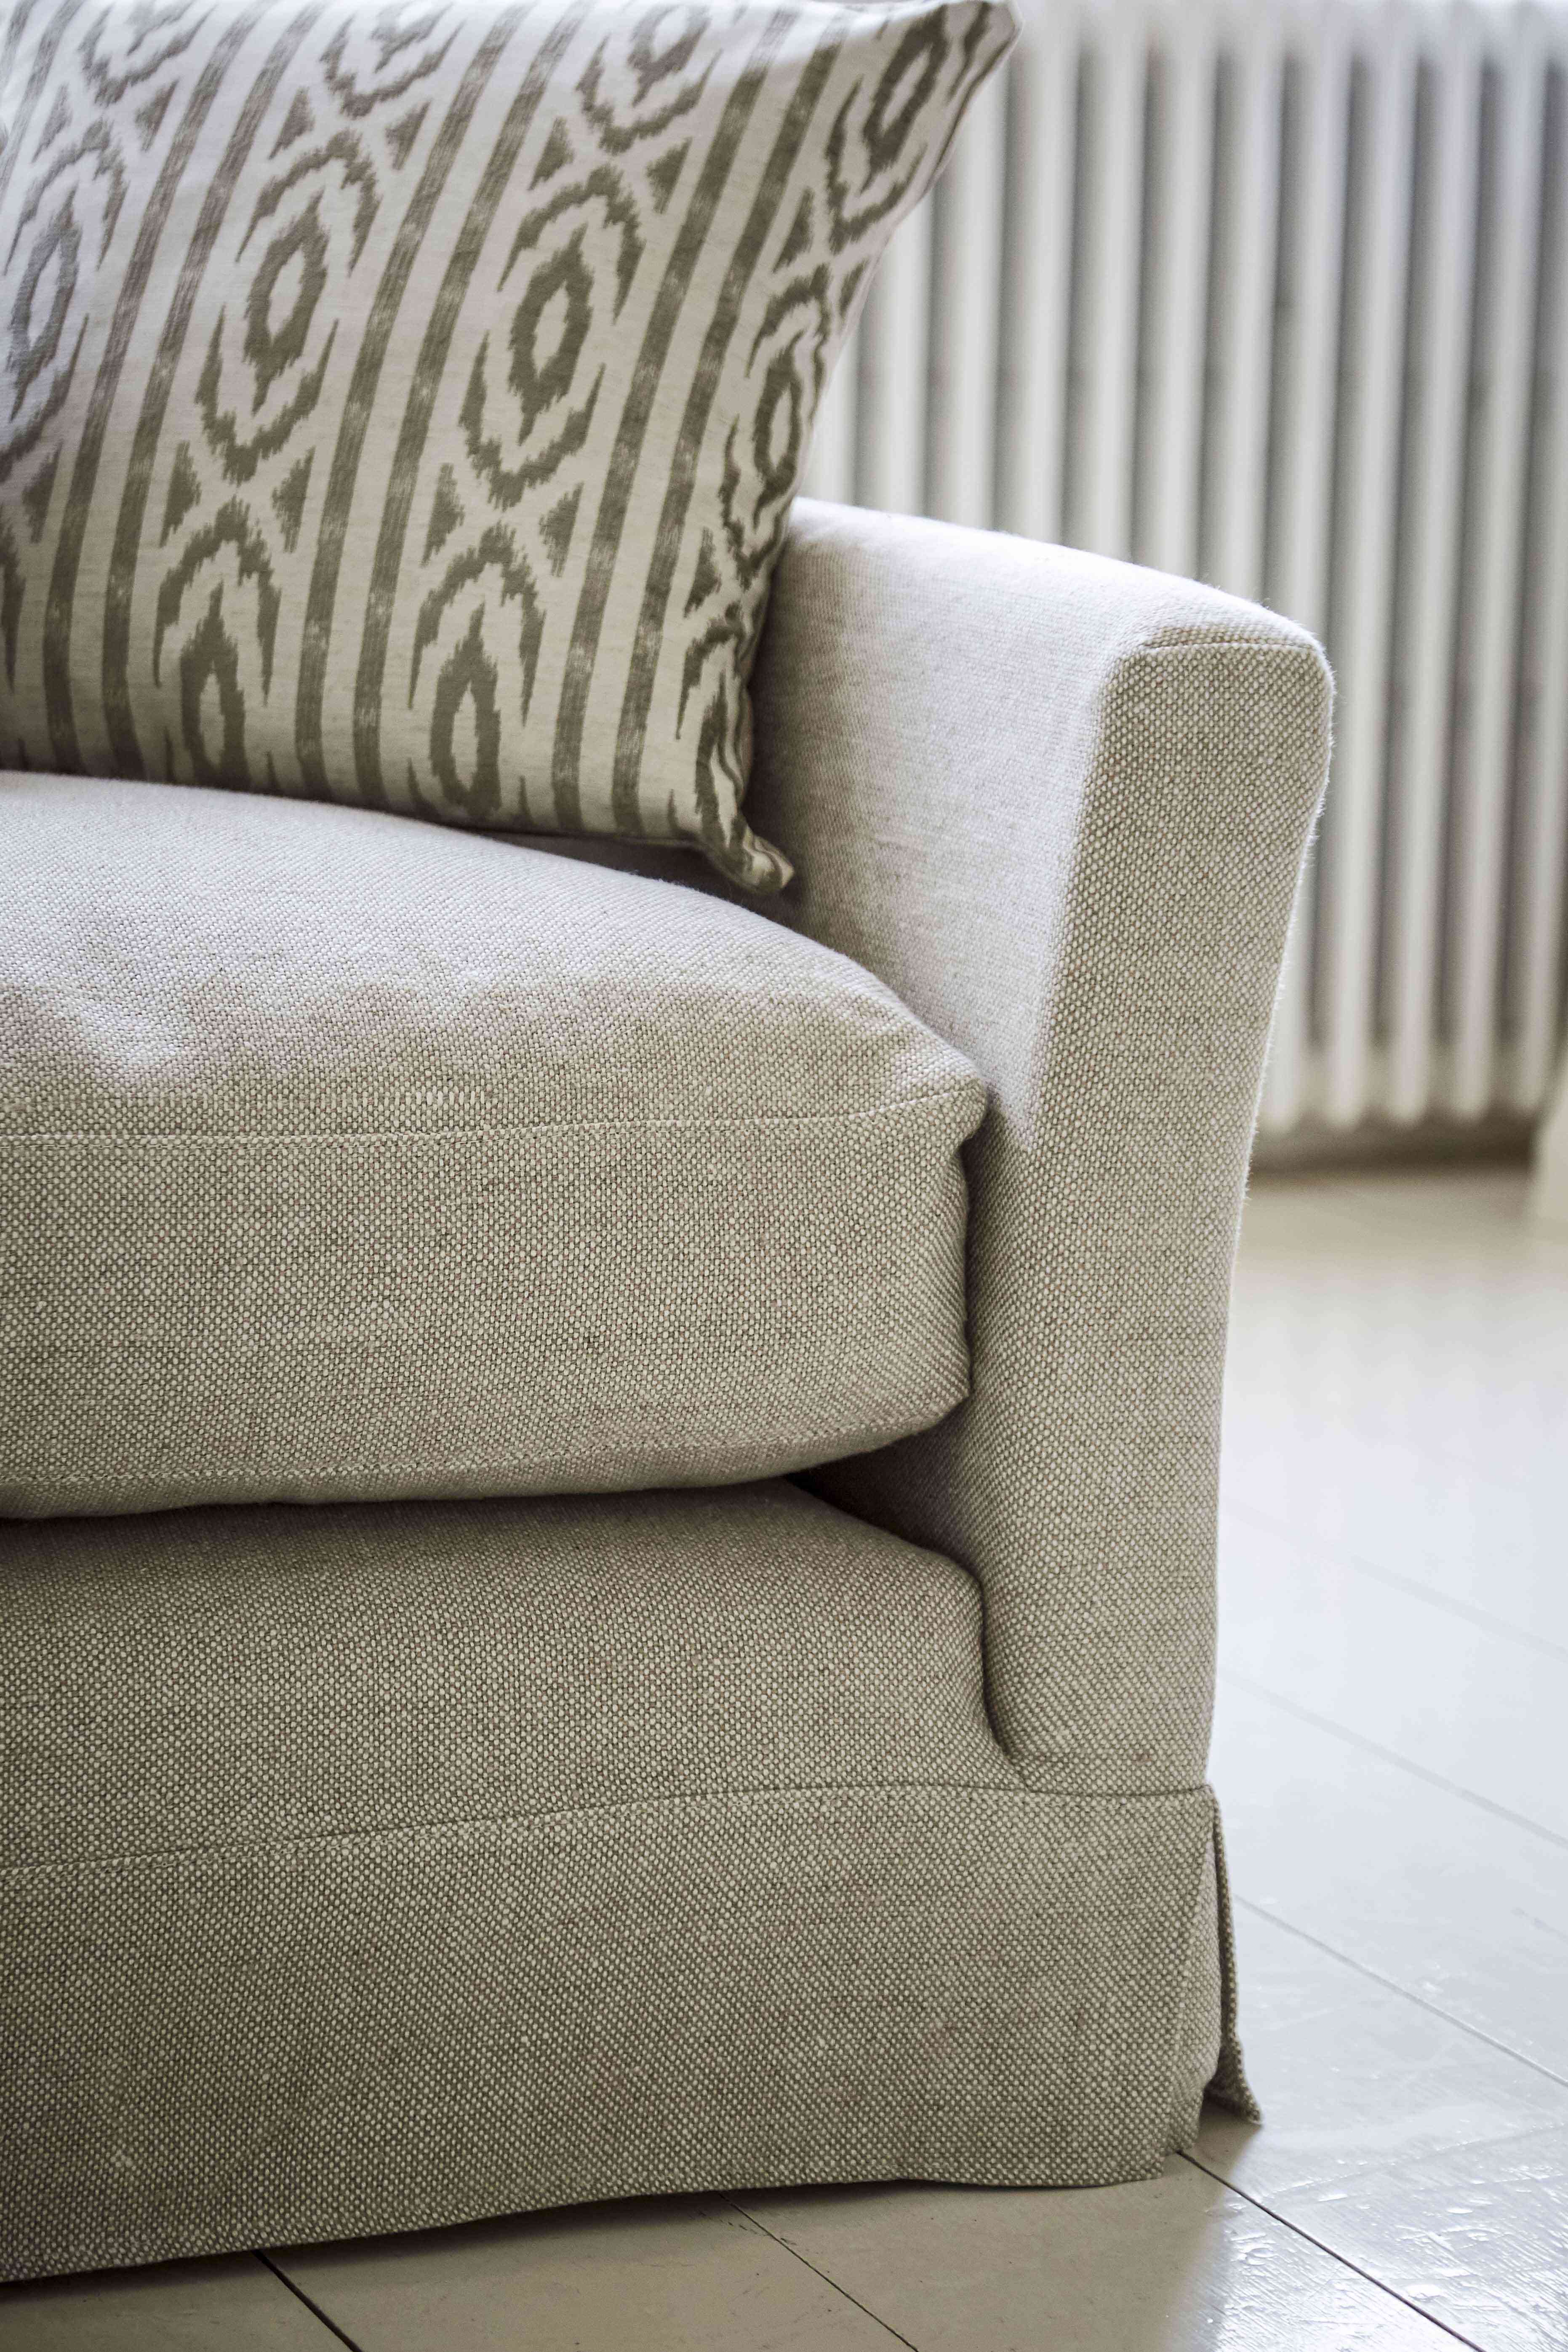 Otto Clay House Herringbone Weave Sofa - 2.5 Seater